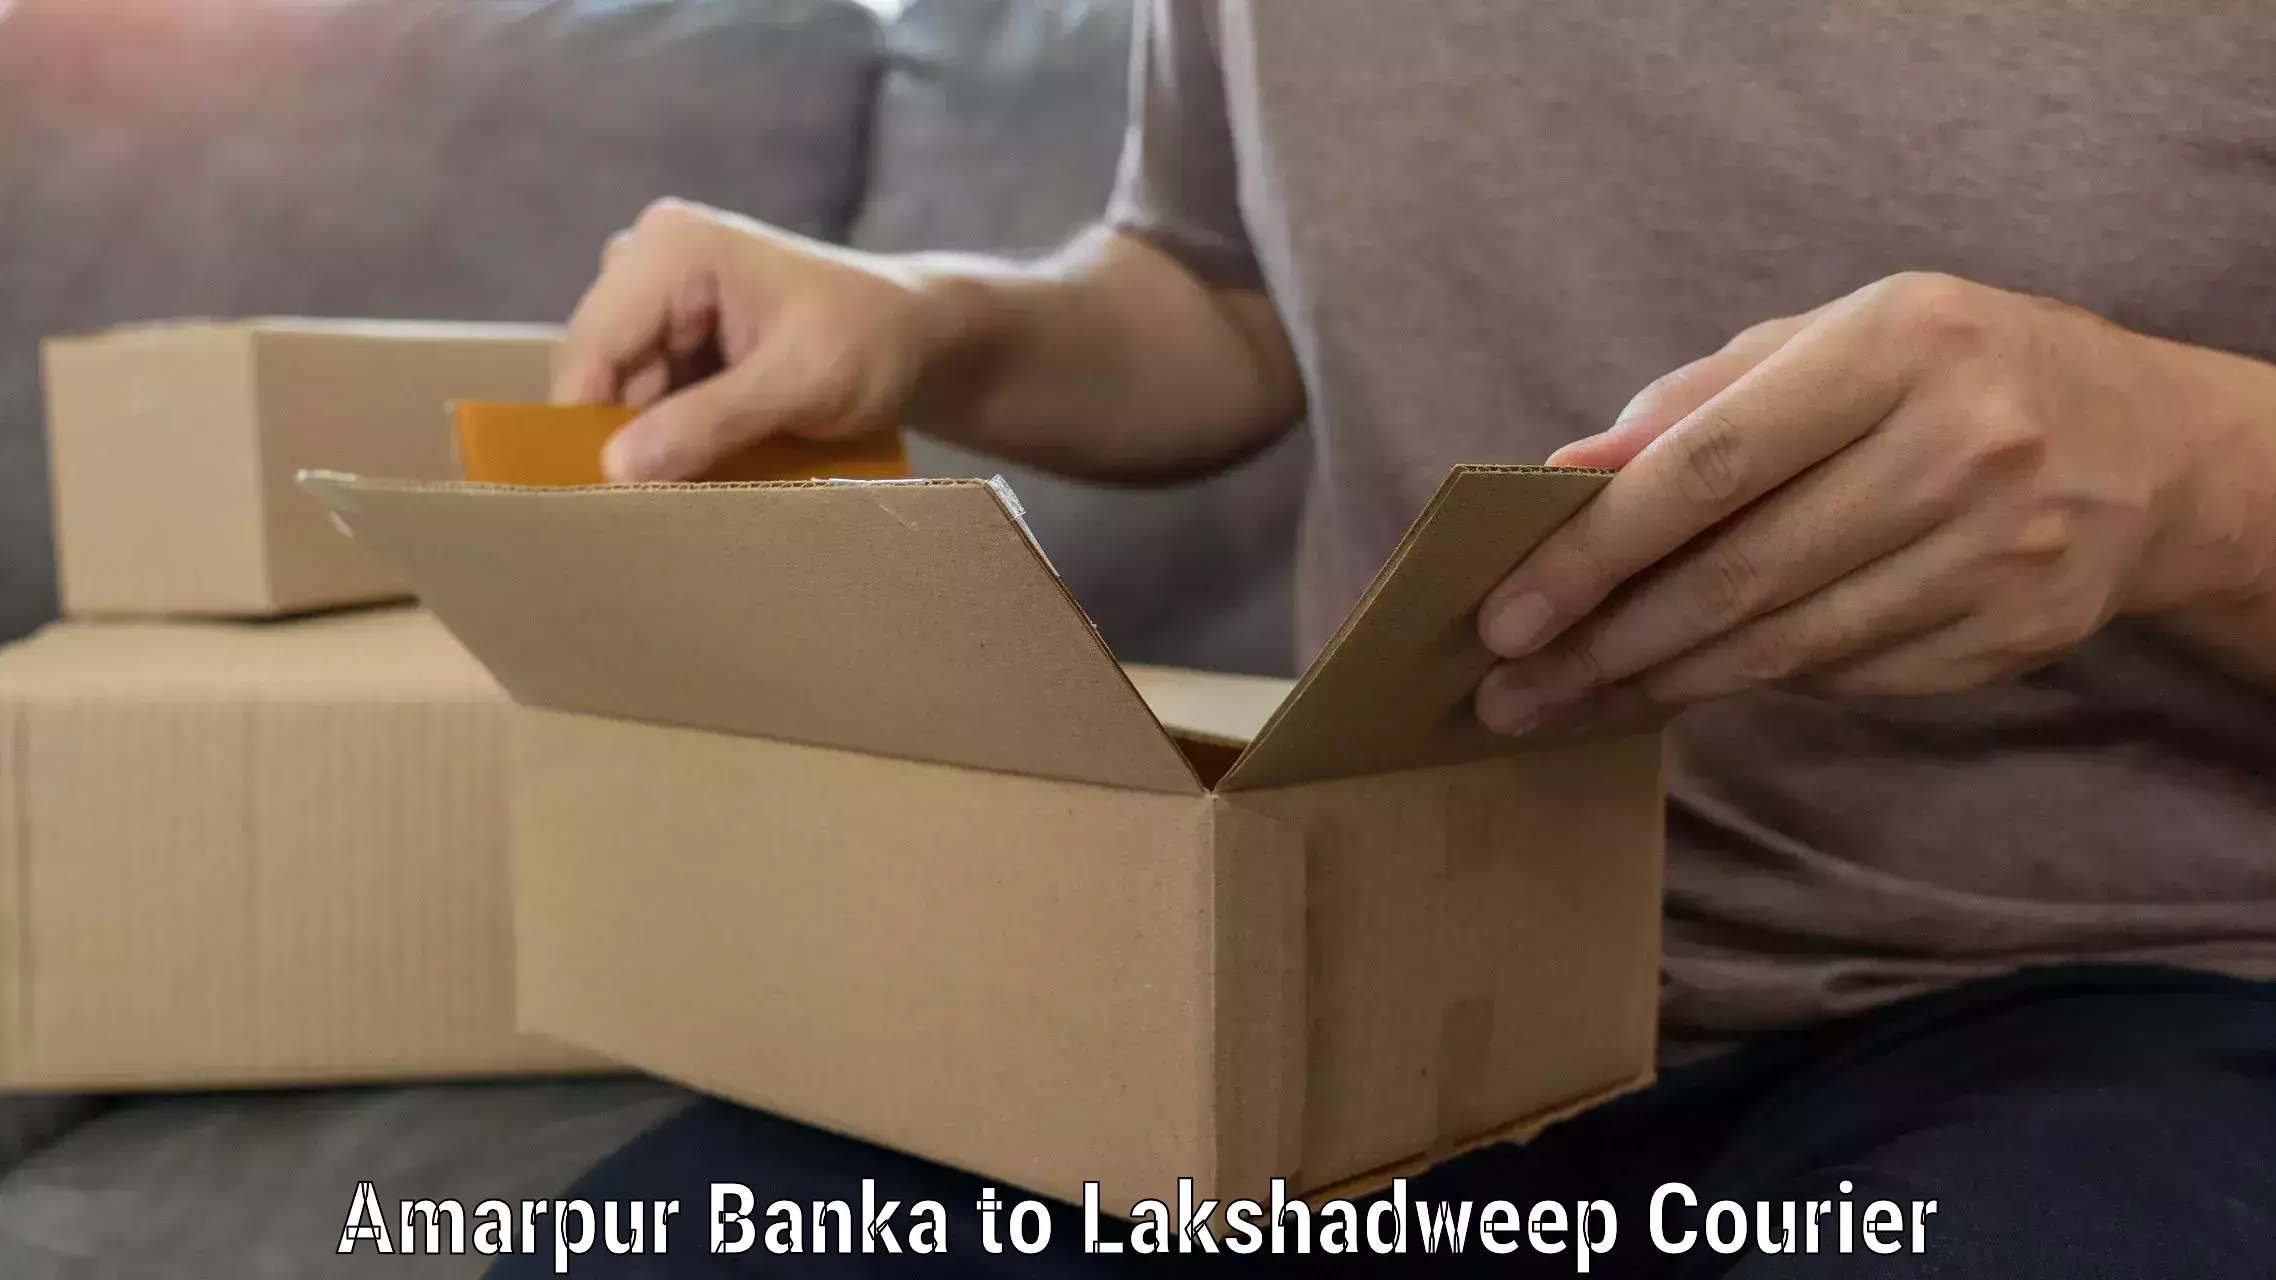 Efficient moving company Amarpur Banka to Lakshadweep